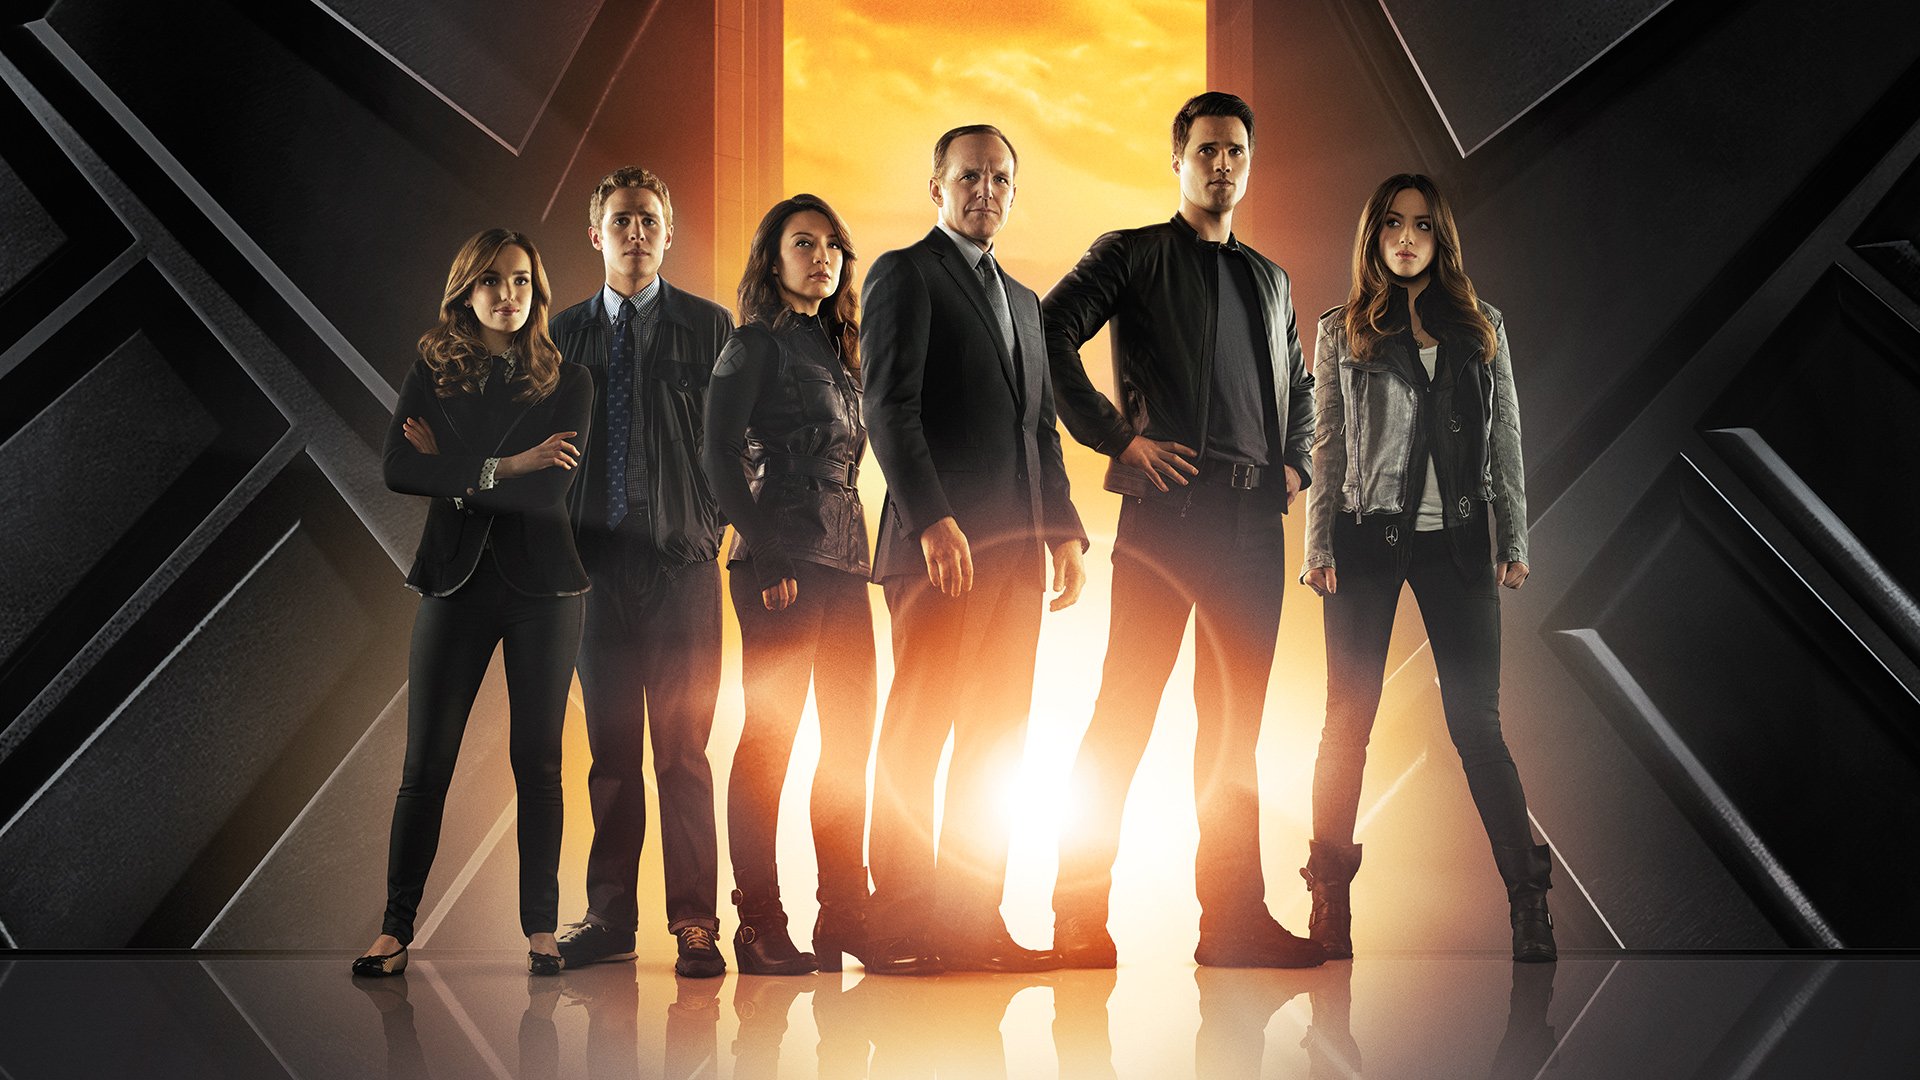 შილდის აგენტები სეზონი 1 / Marvel: Agents of S.H.I.E.L.D. Season 1 ქართულად